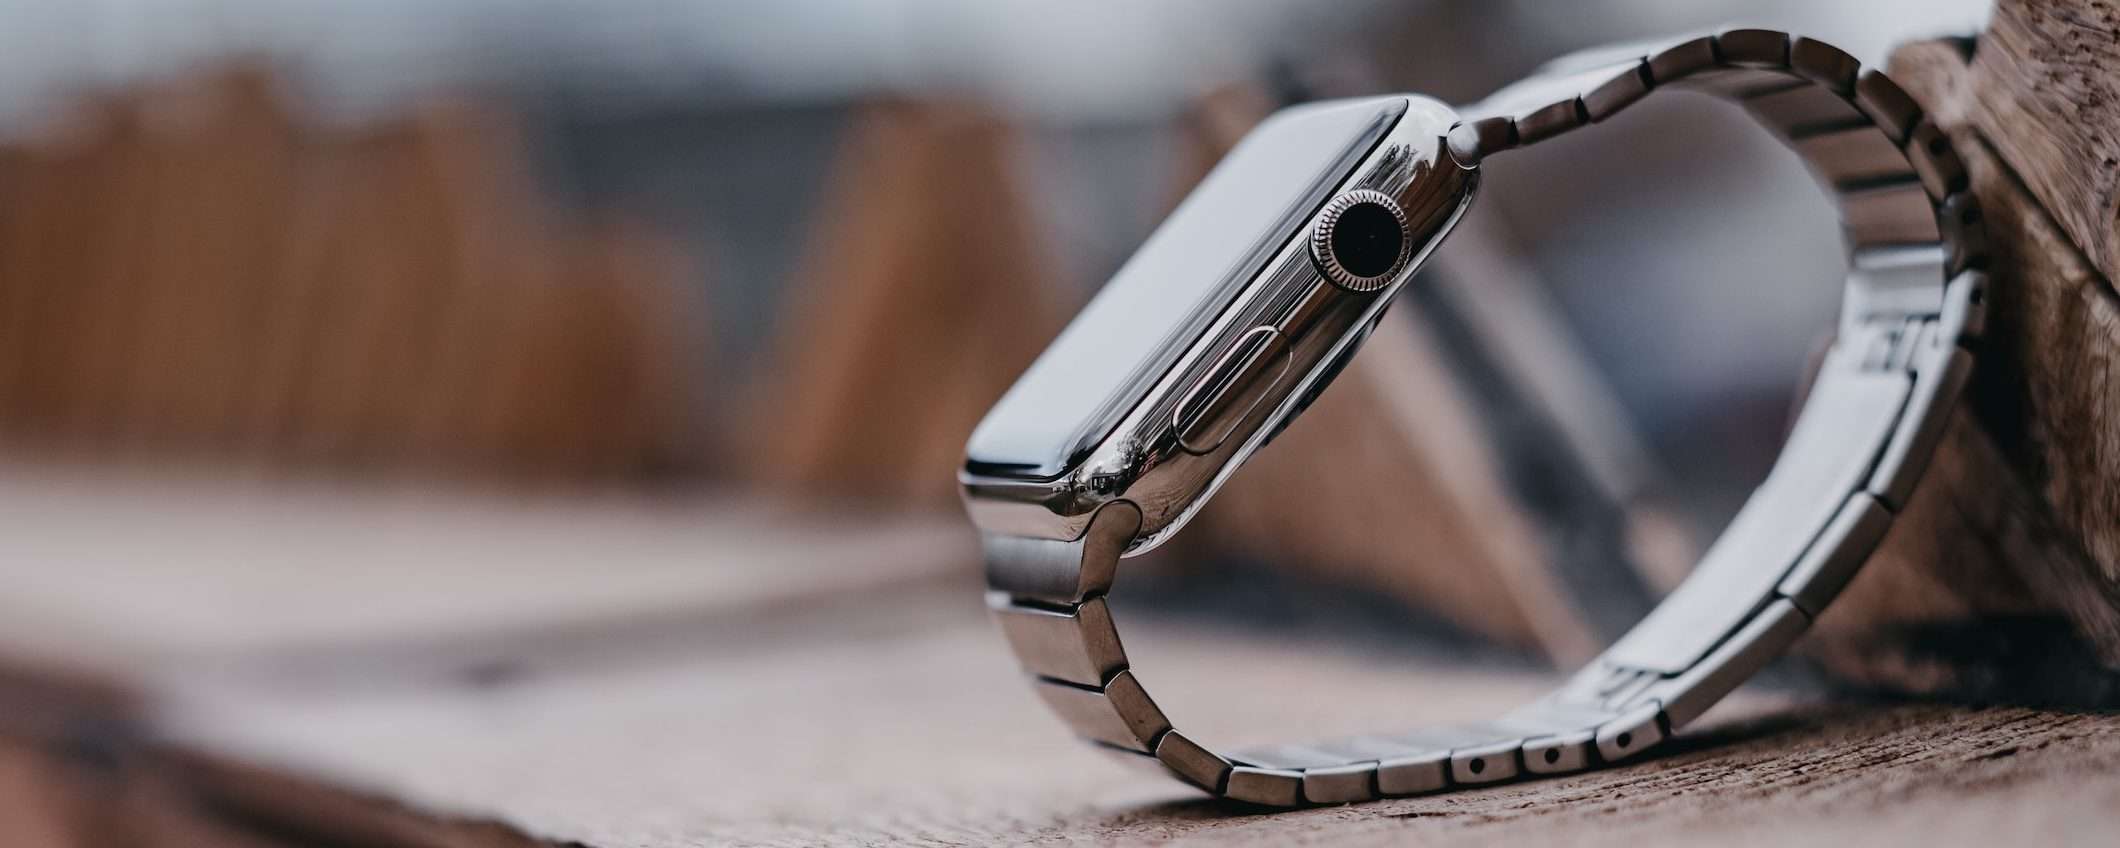 Apple Watch Pro avrà un display totalmente piatto